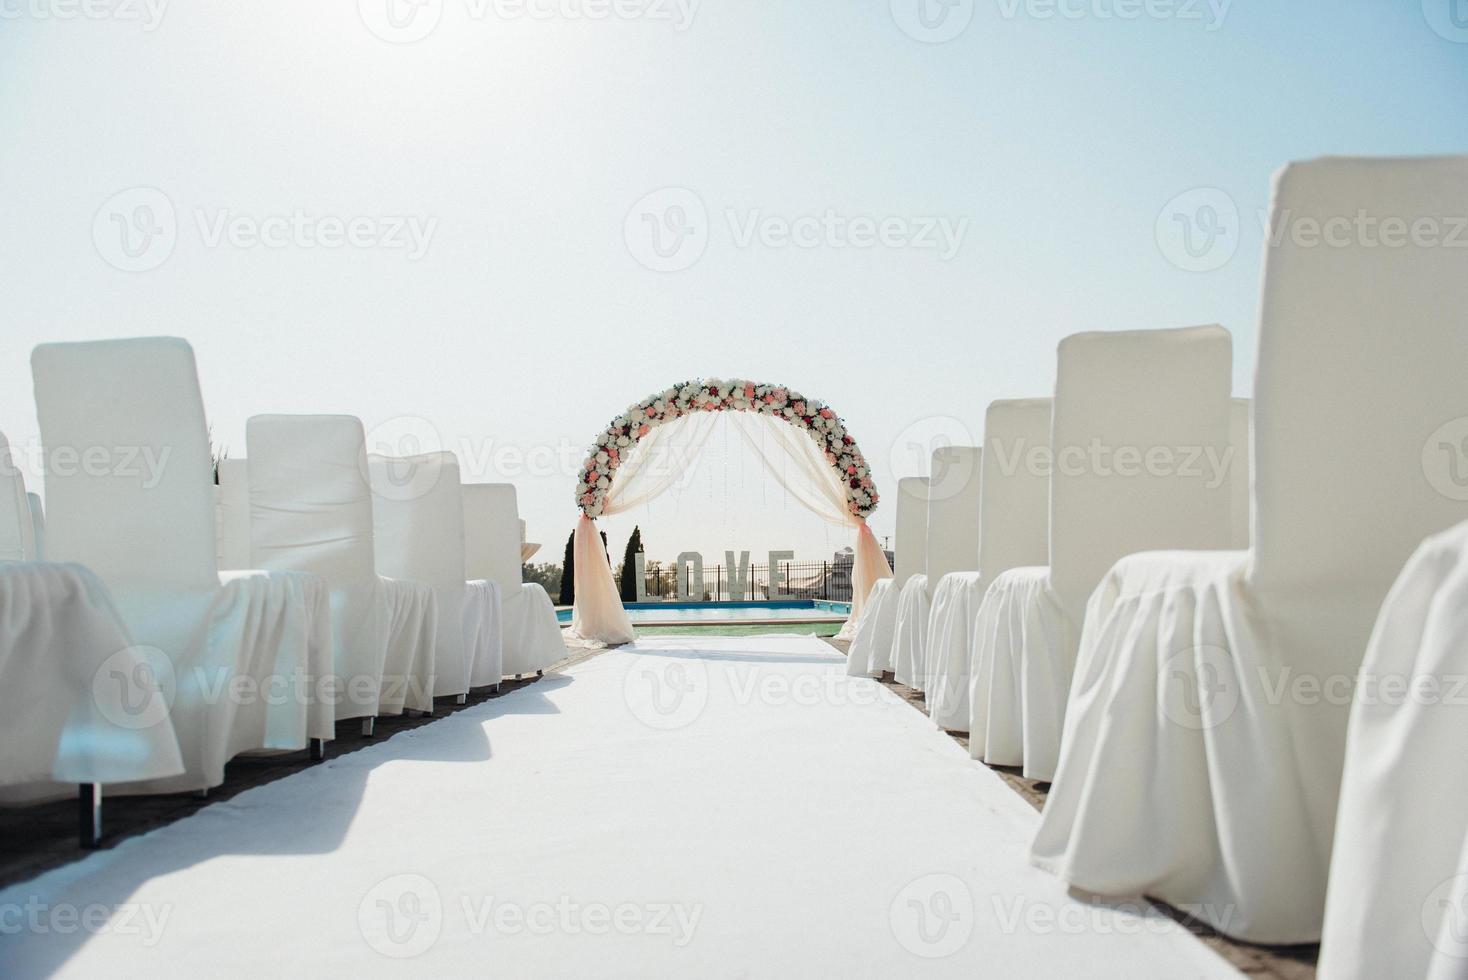 huwelijksceremonie gebied foto